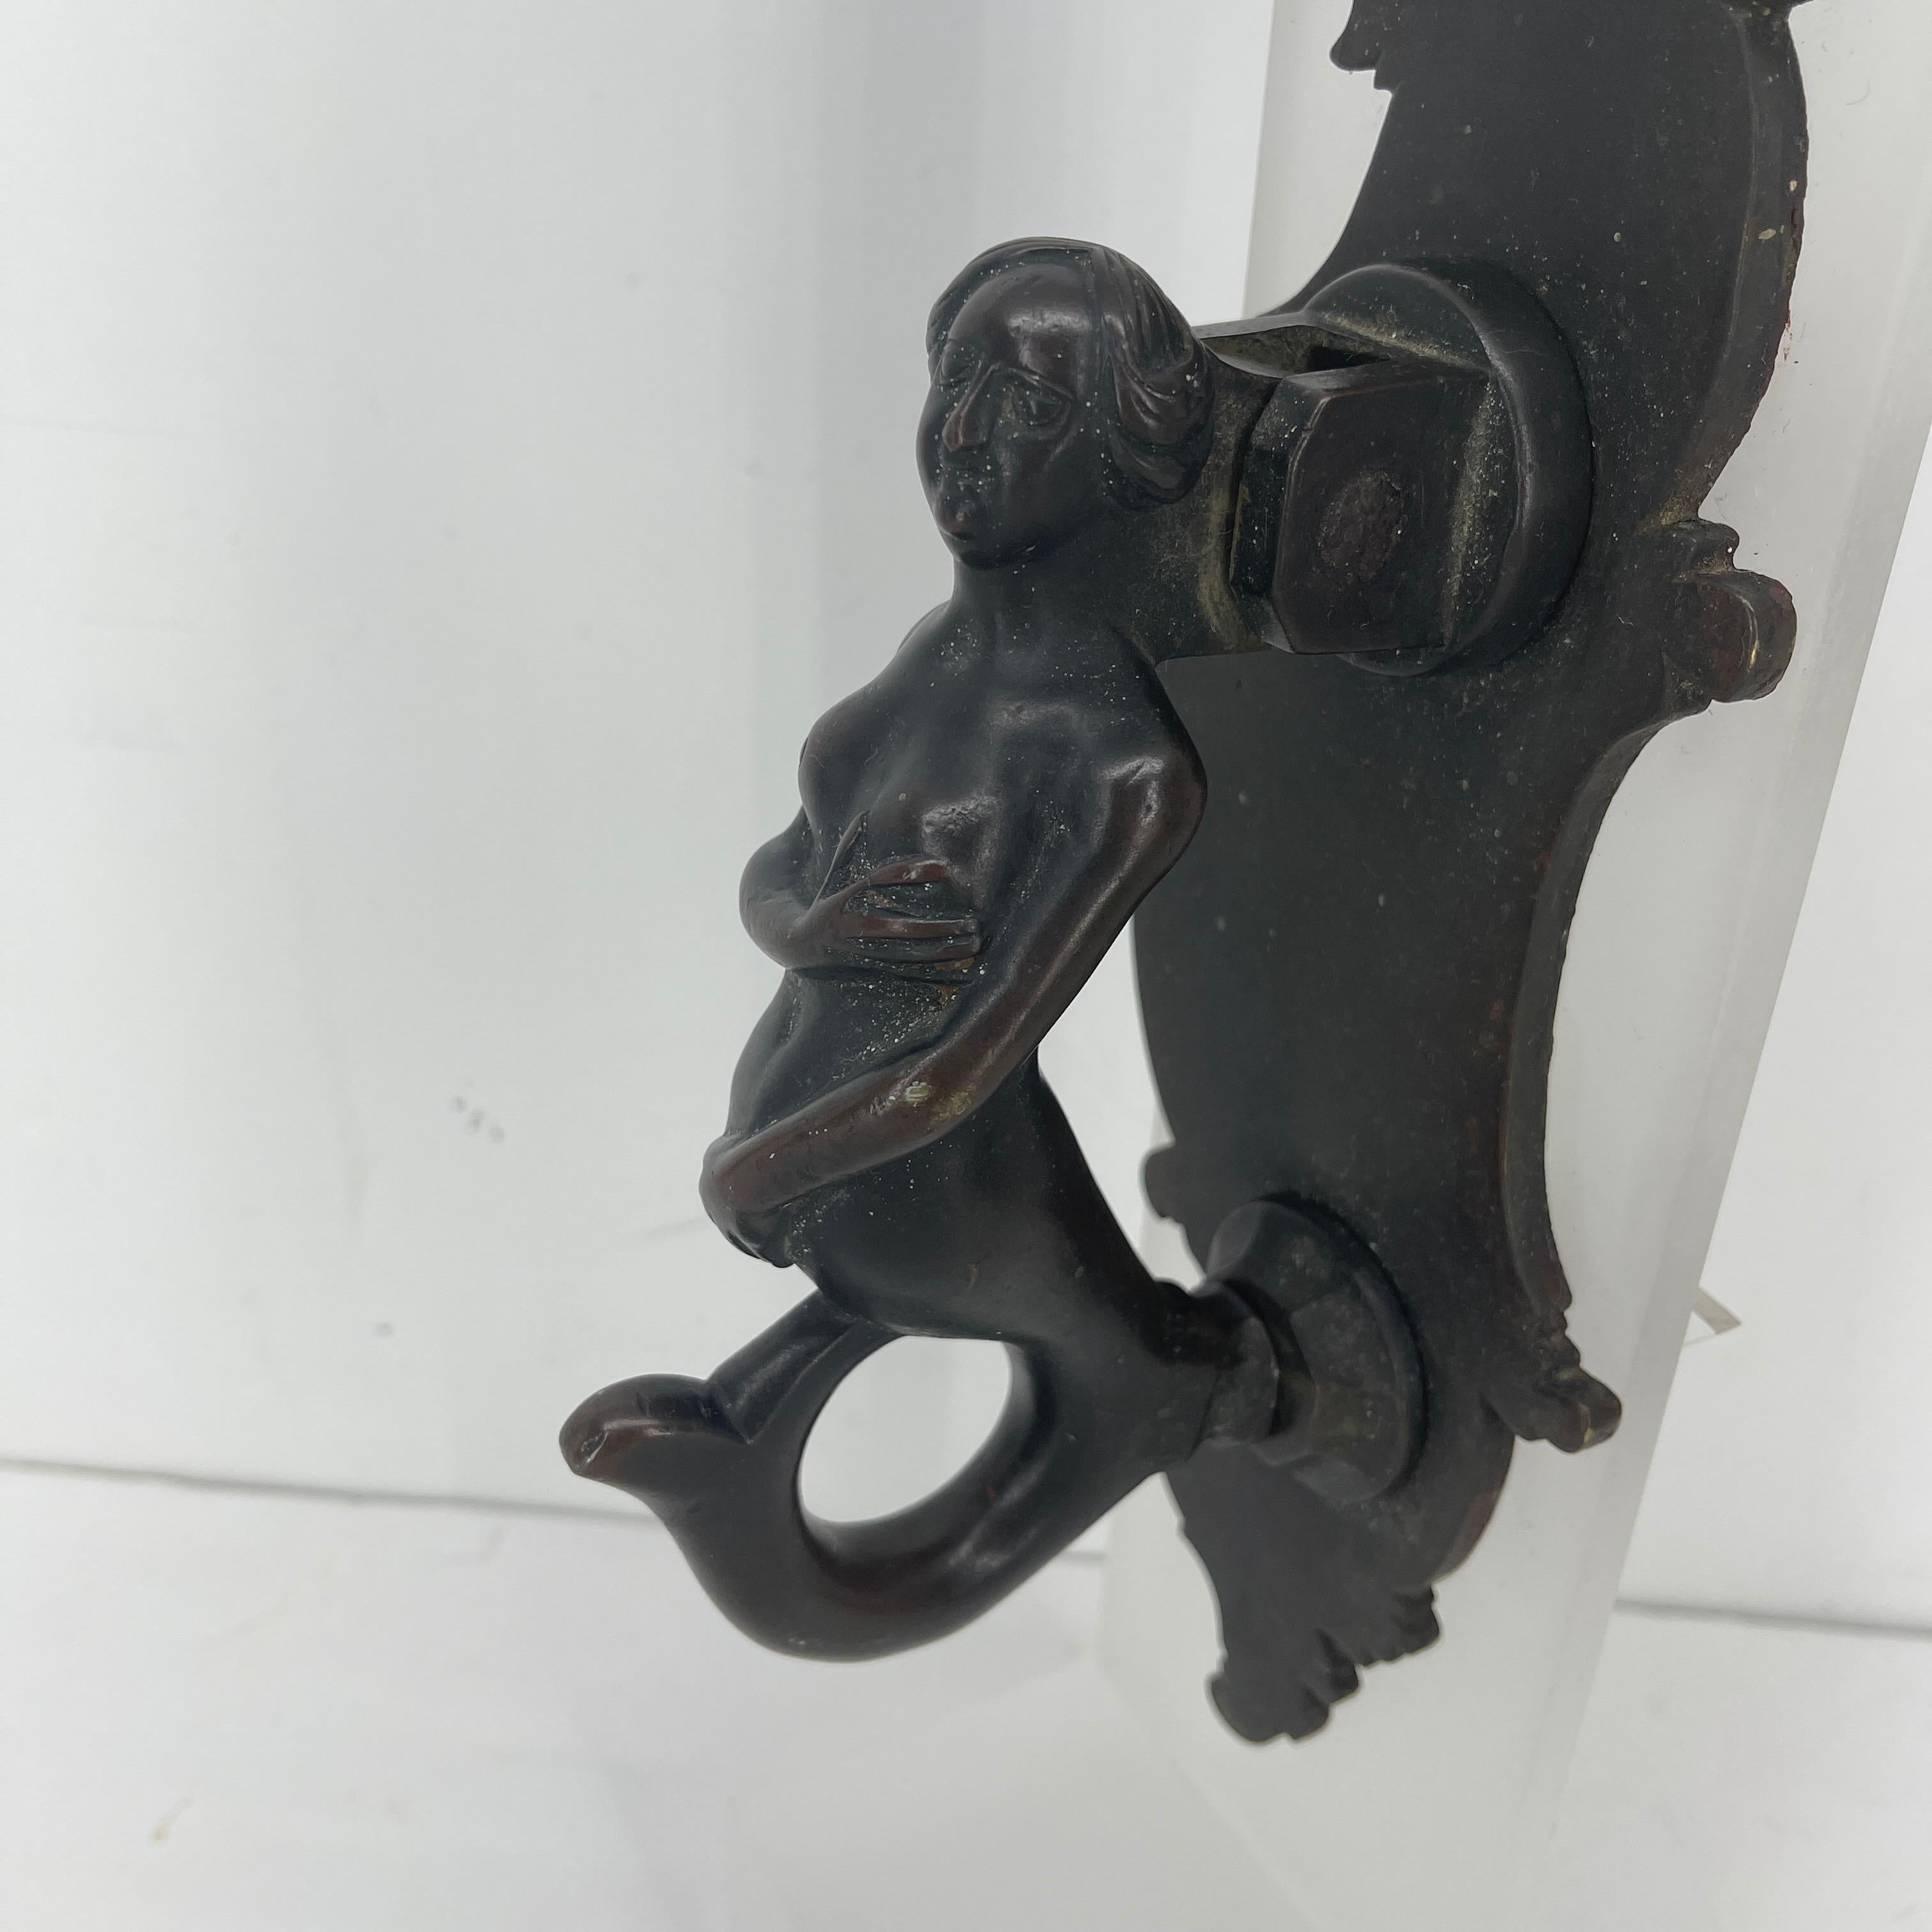 Frappe-porte sirène en bronze baroque allemand sur socle en lucite givrée.
Ce heurtoir est une œuvre d'art ; en bronze lourd à la patine d'origine, il représente une sirène au visage et au corps expressifs, travaillée à la main et montée sur un